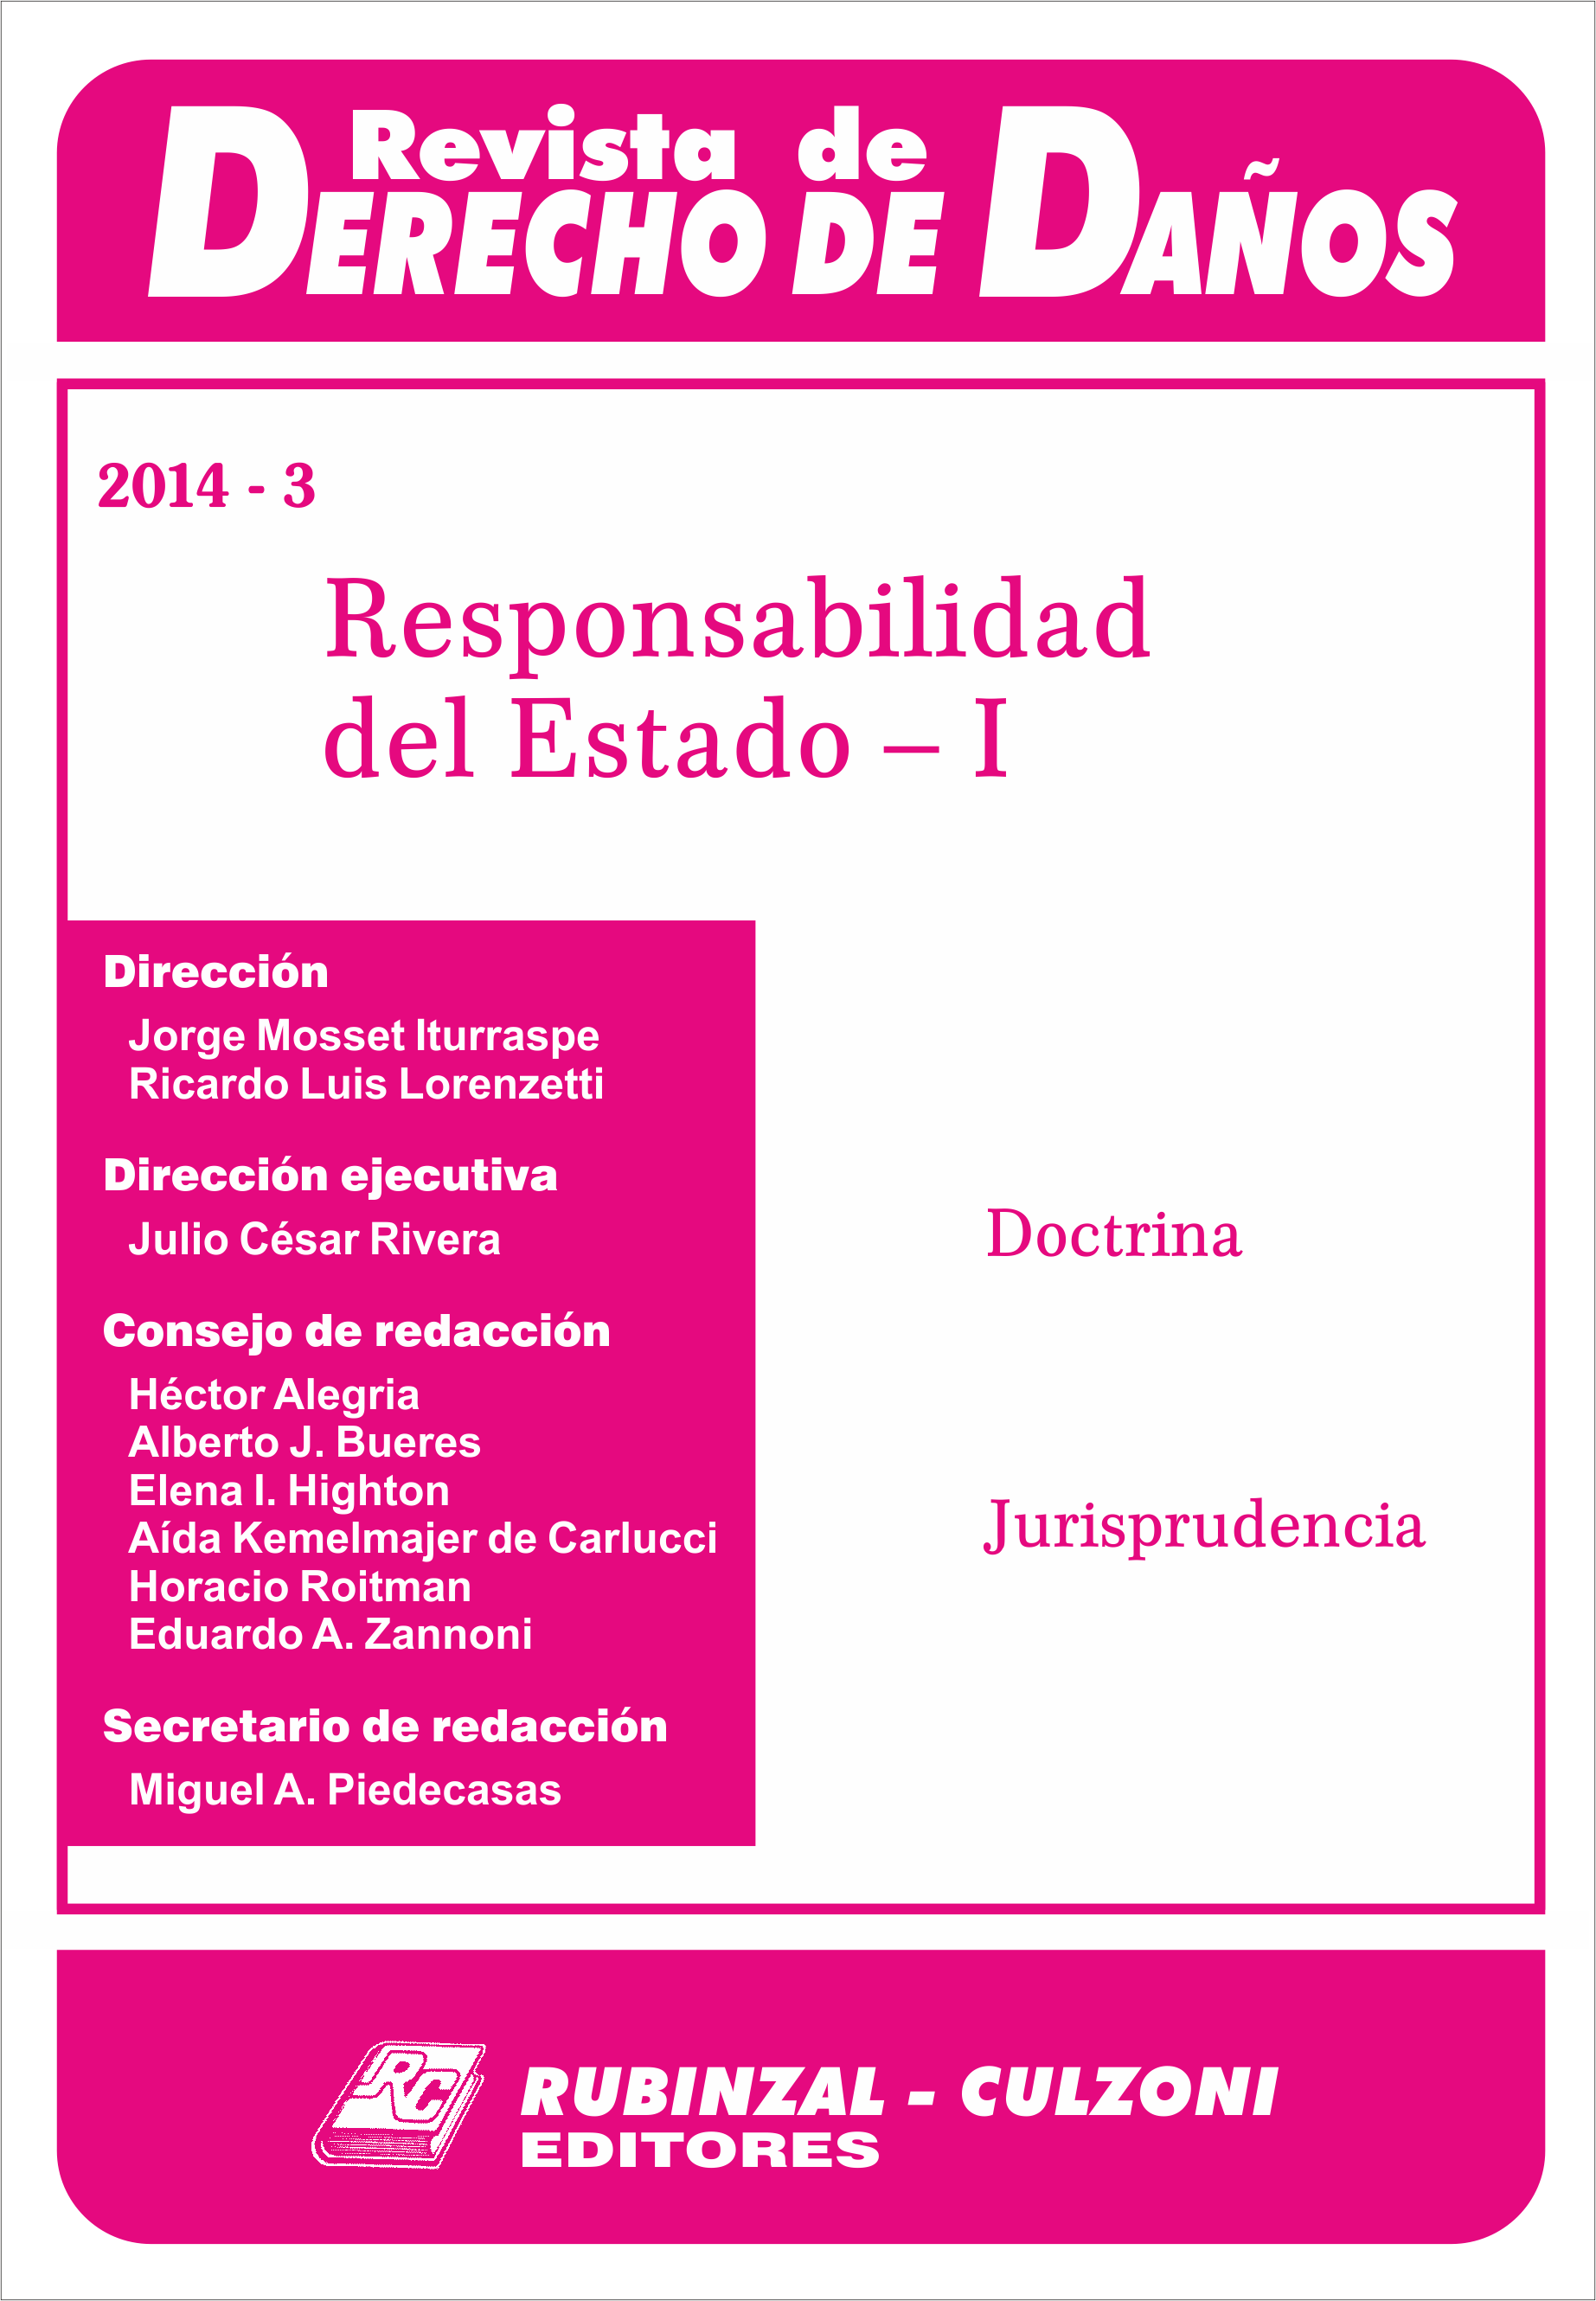 Revista de Derecho de Daños - Responsabilidad del Estado - I.